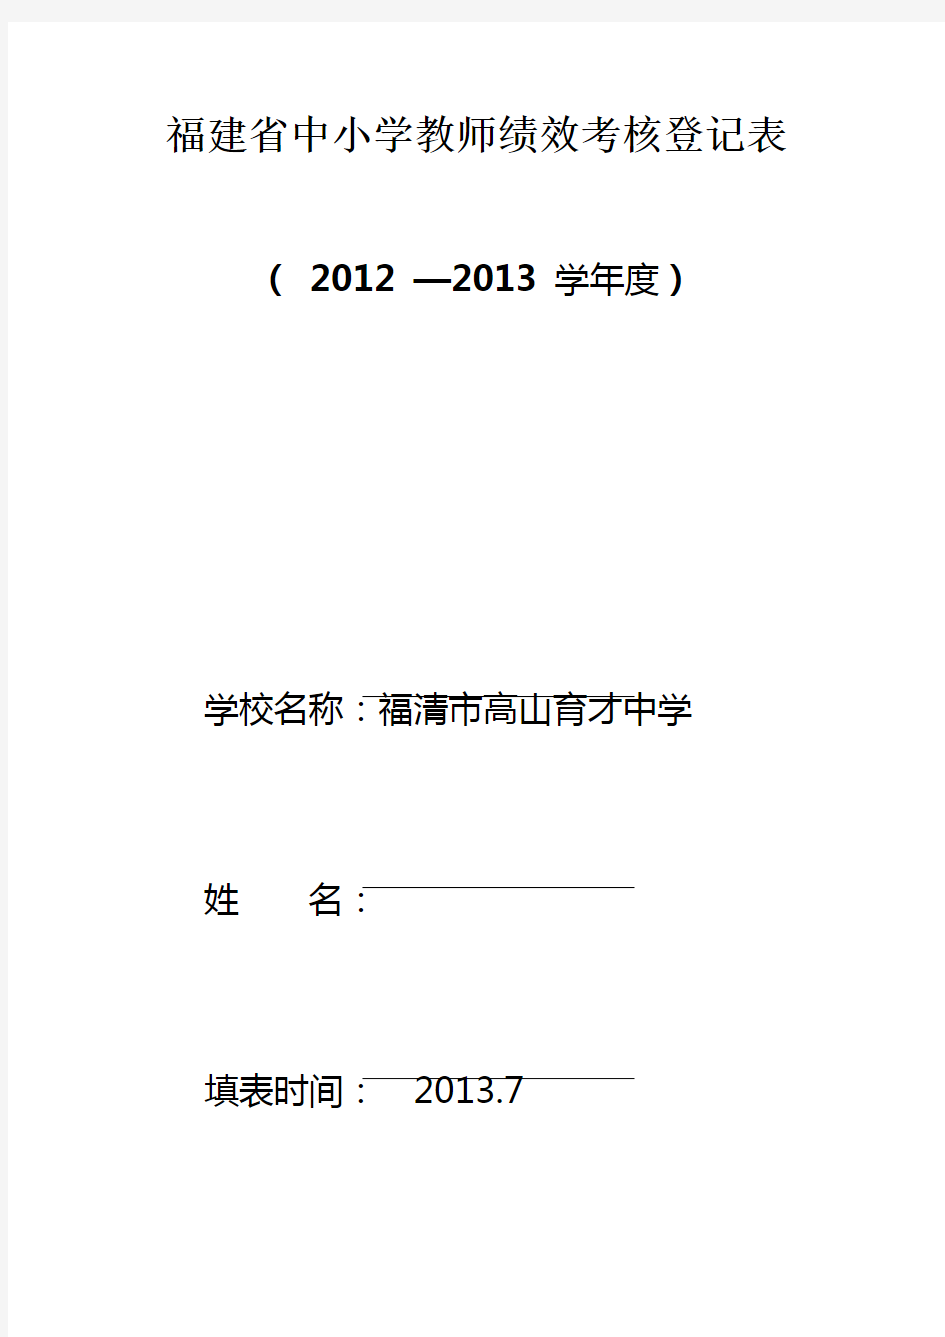 福建省中小学教师绩效考核登记表